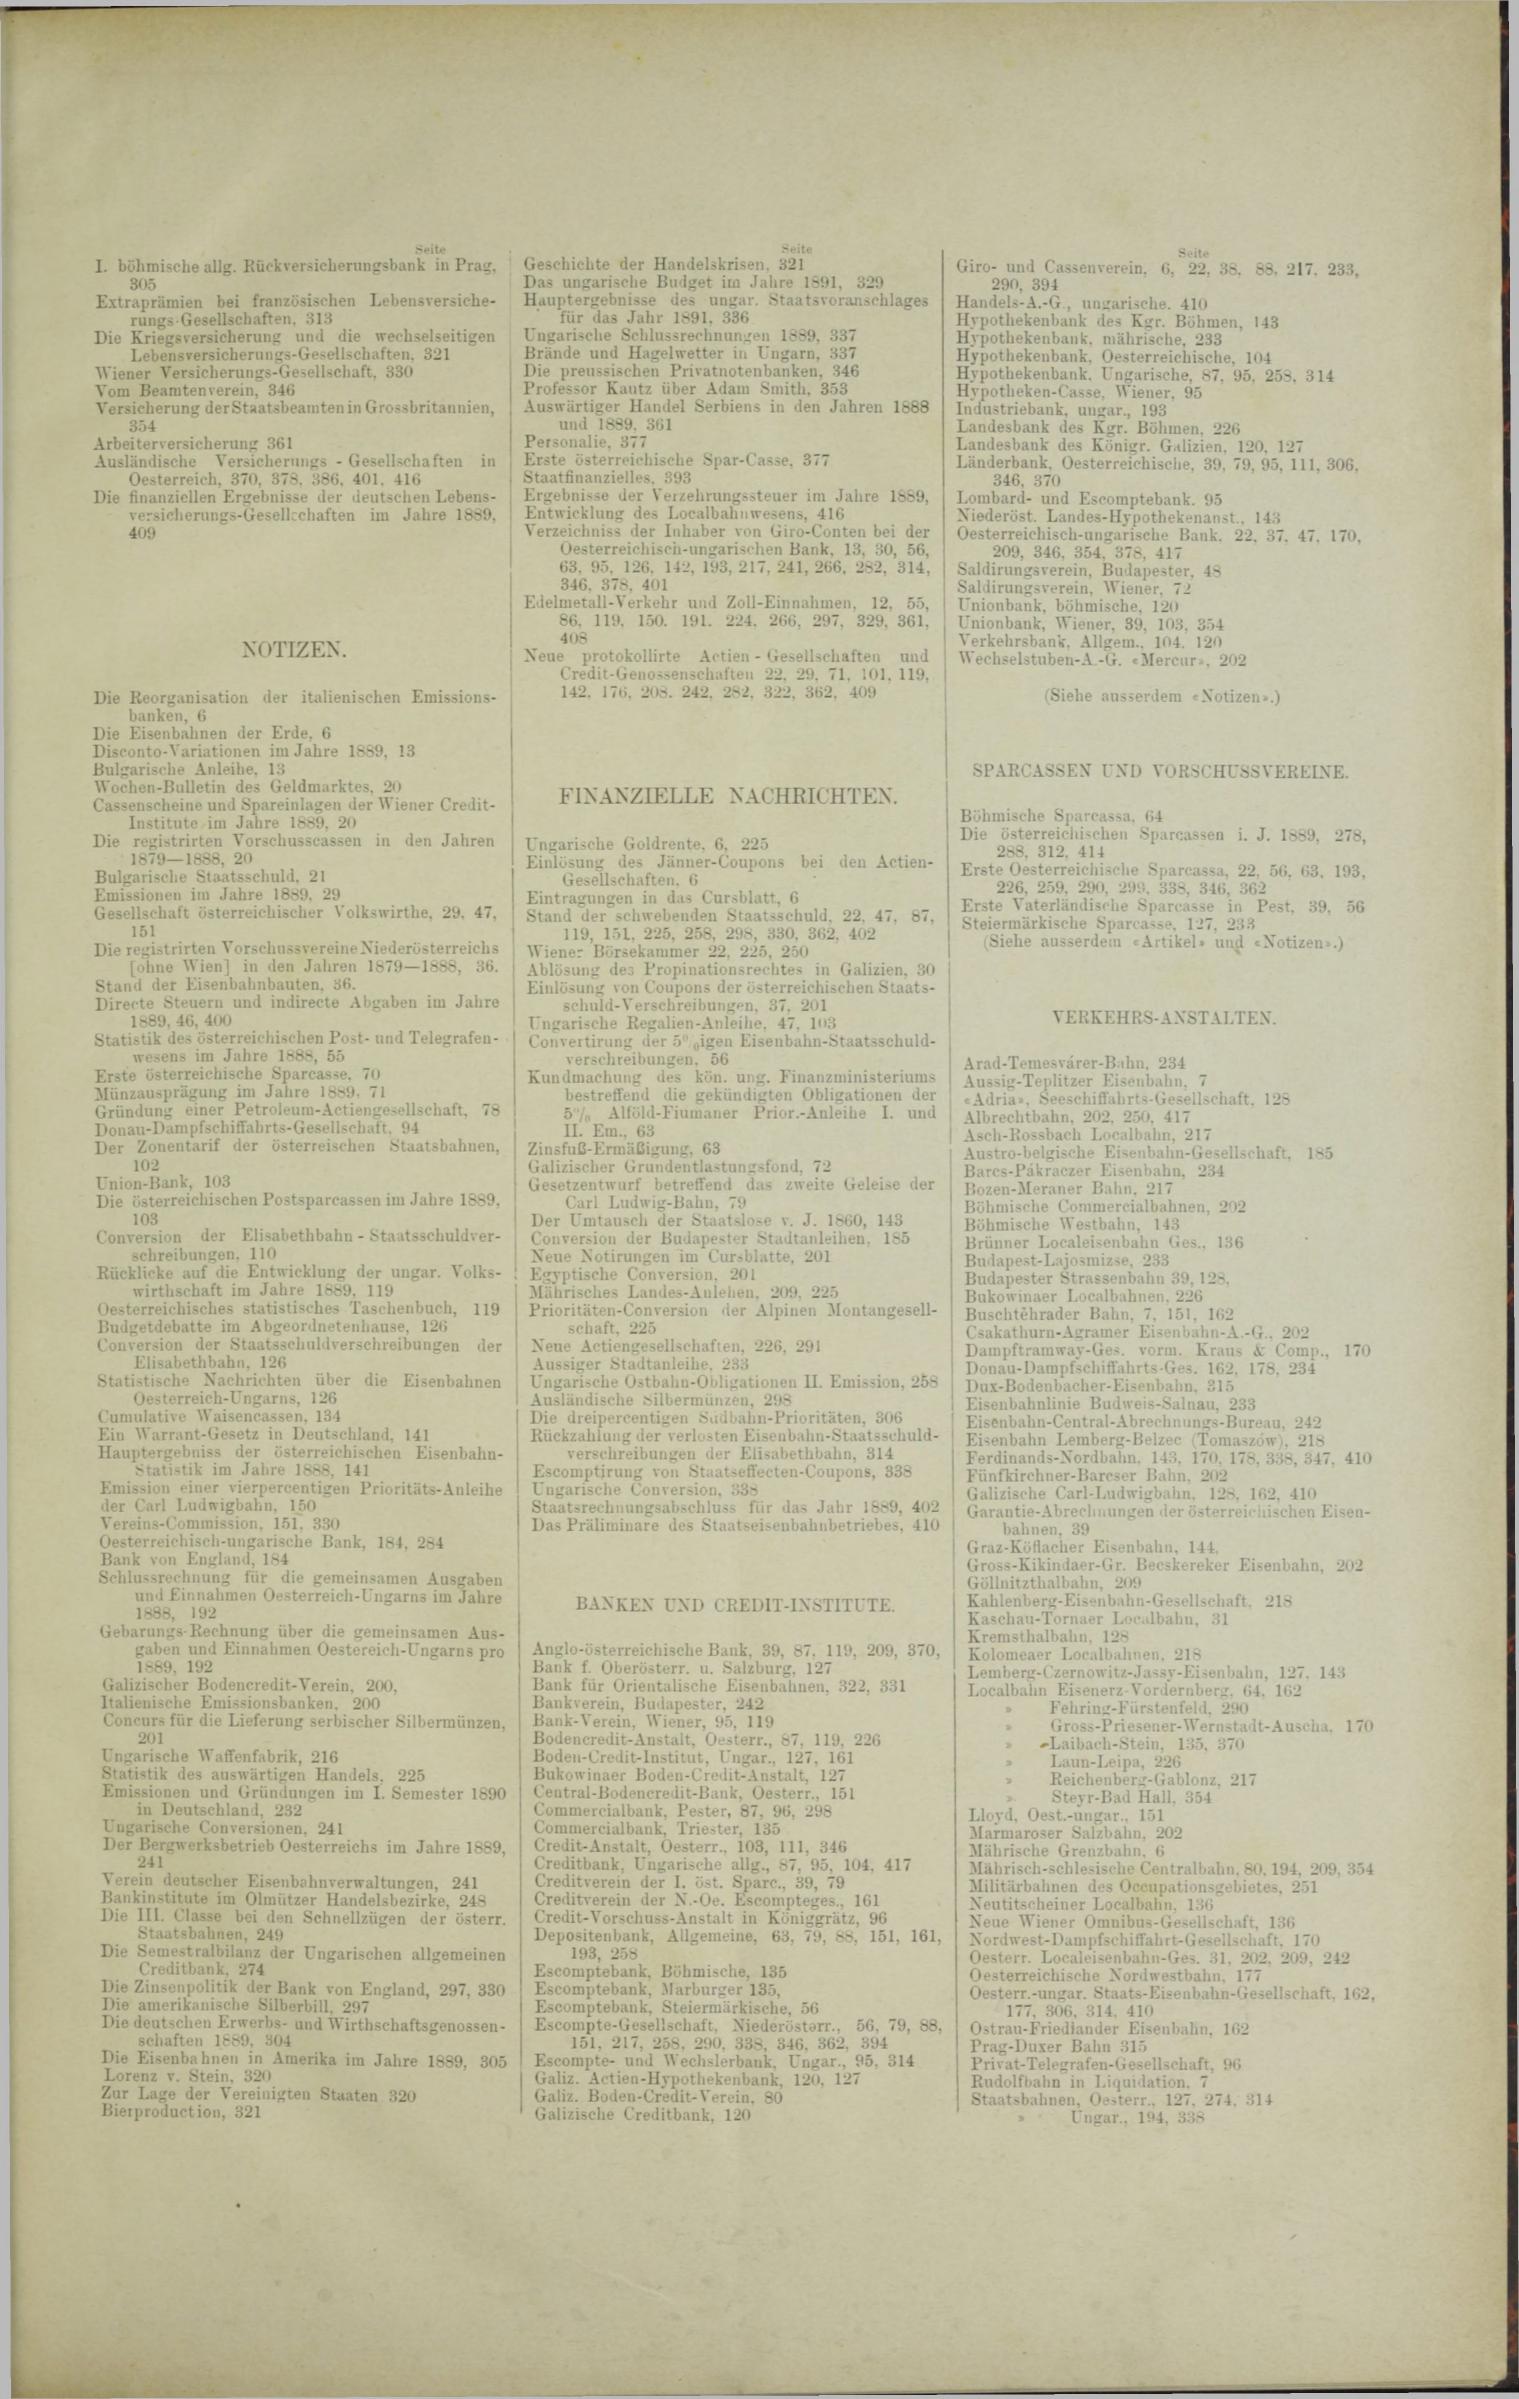 Der Tresor 14.08.1890 - Seite 11